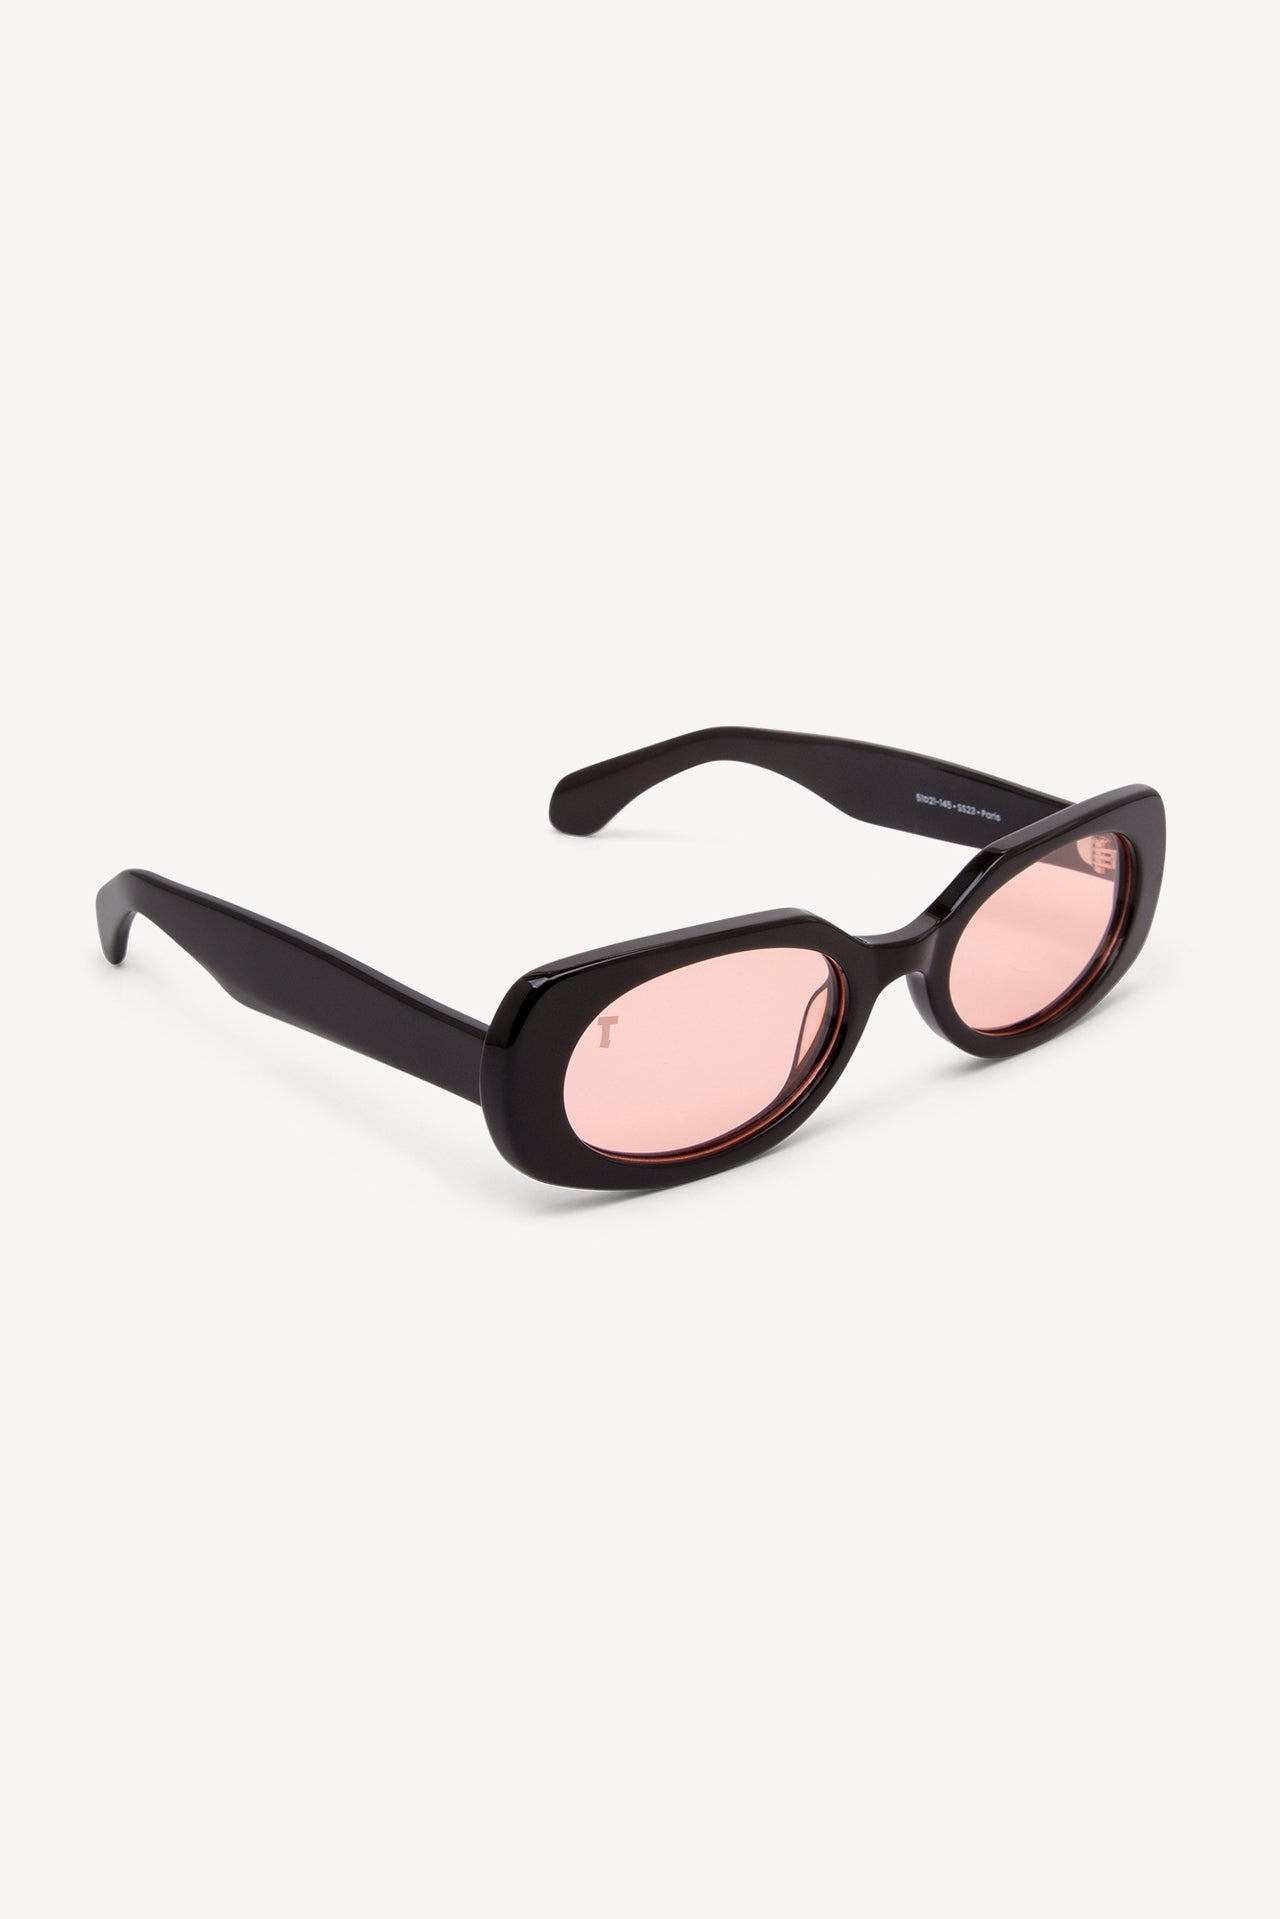 TOATIE Paris Rectangular Sunglasses BLACK/PINK